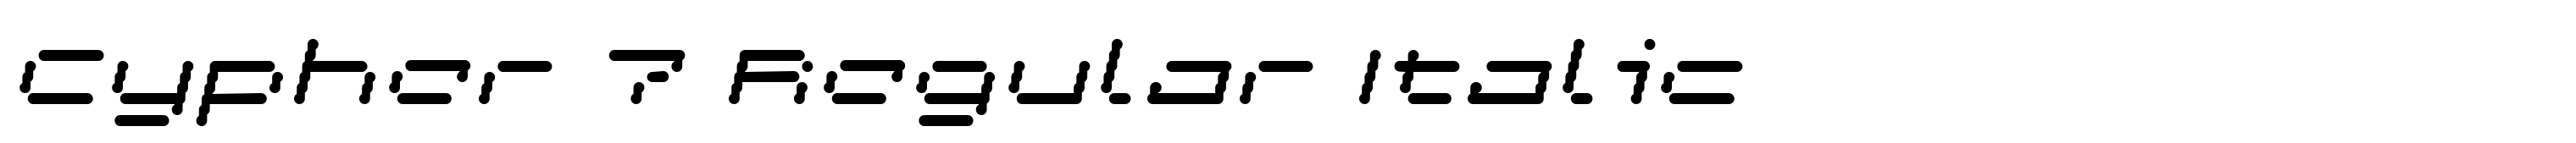 Cypher 7 Regular Italic